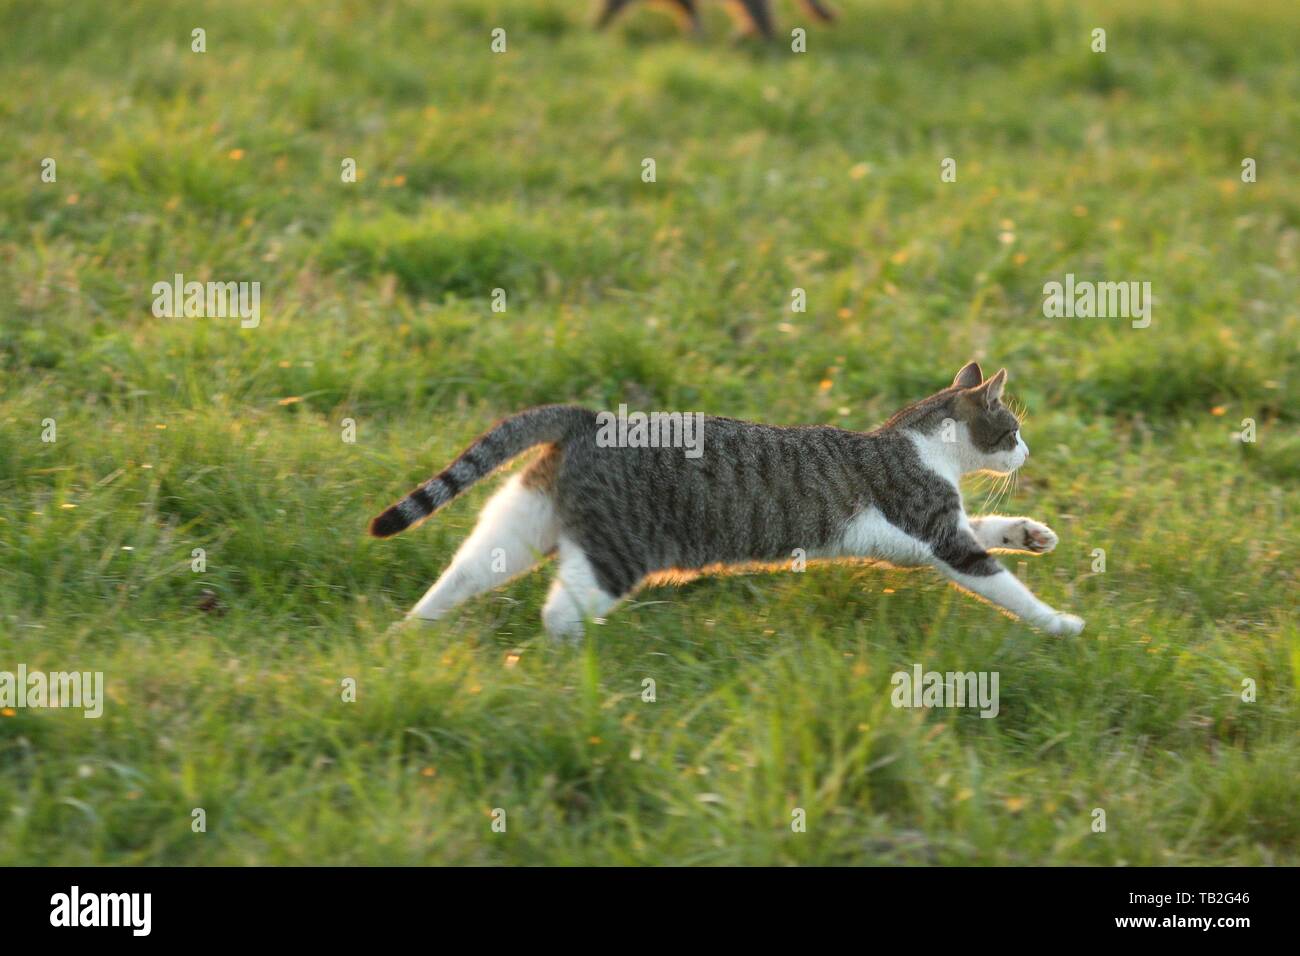 running cat Stock Photo